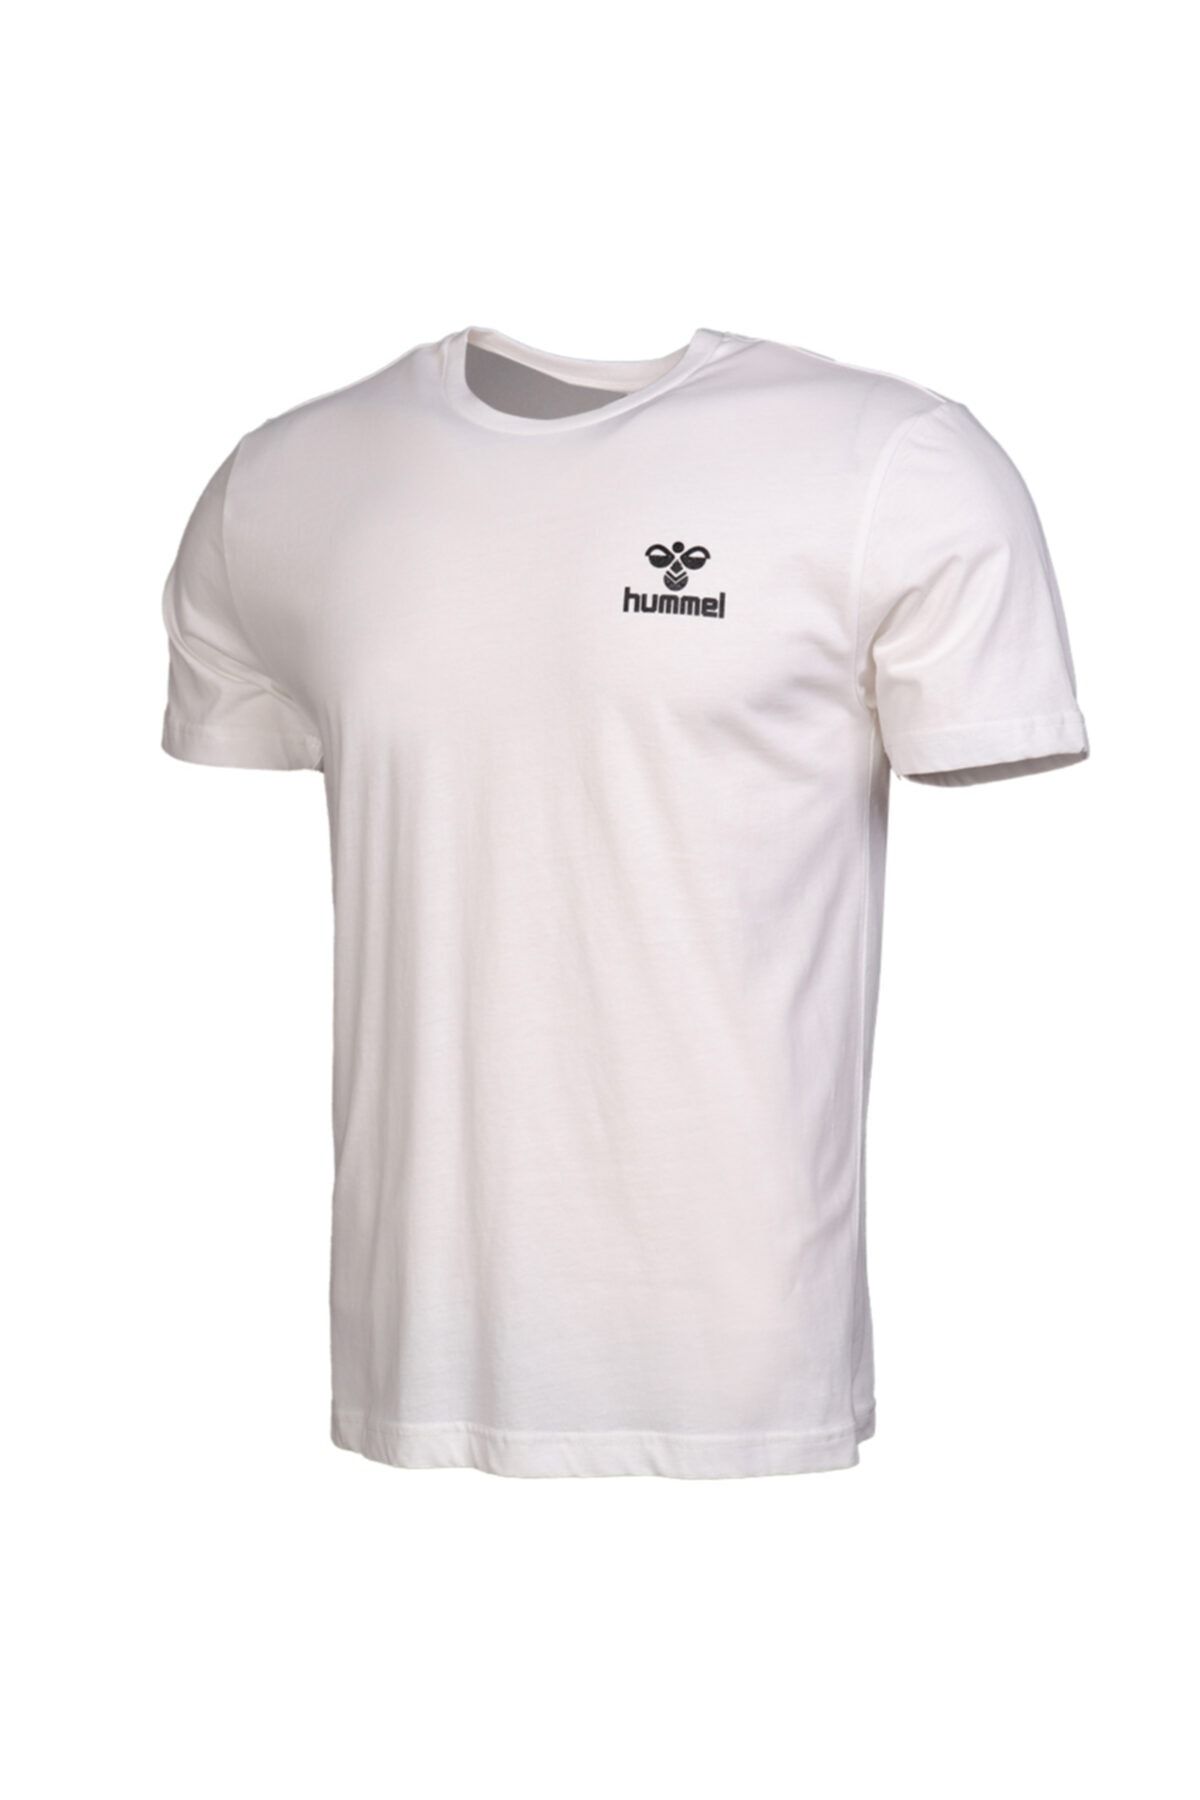 hummel Keaton - Erkek Beyaz Kısa Kollu T-Shirt